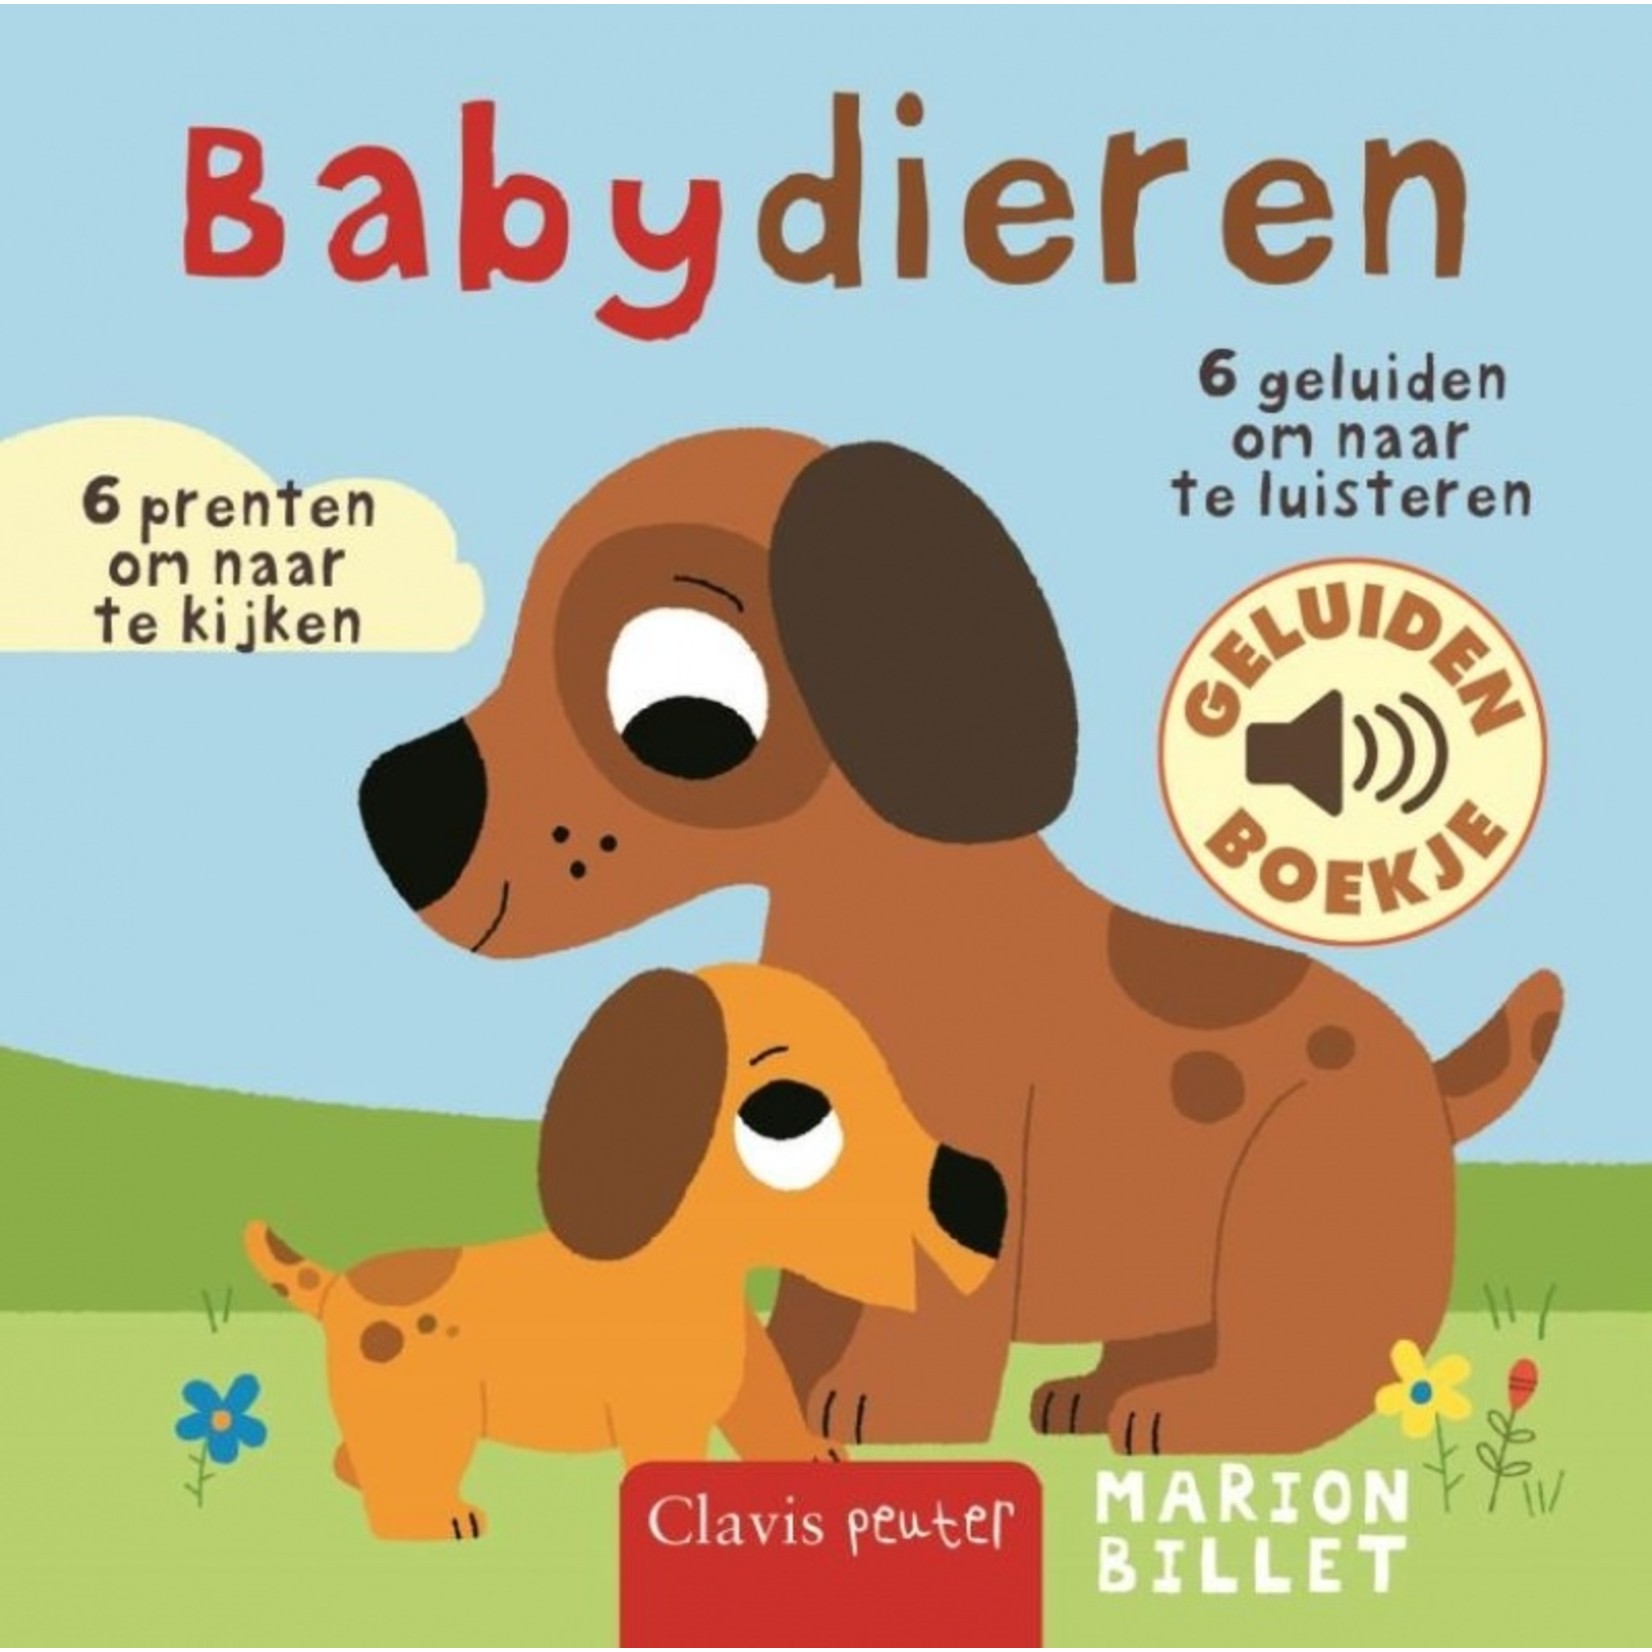 Boek - Babydieren (geluidenboekje)